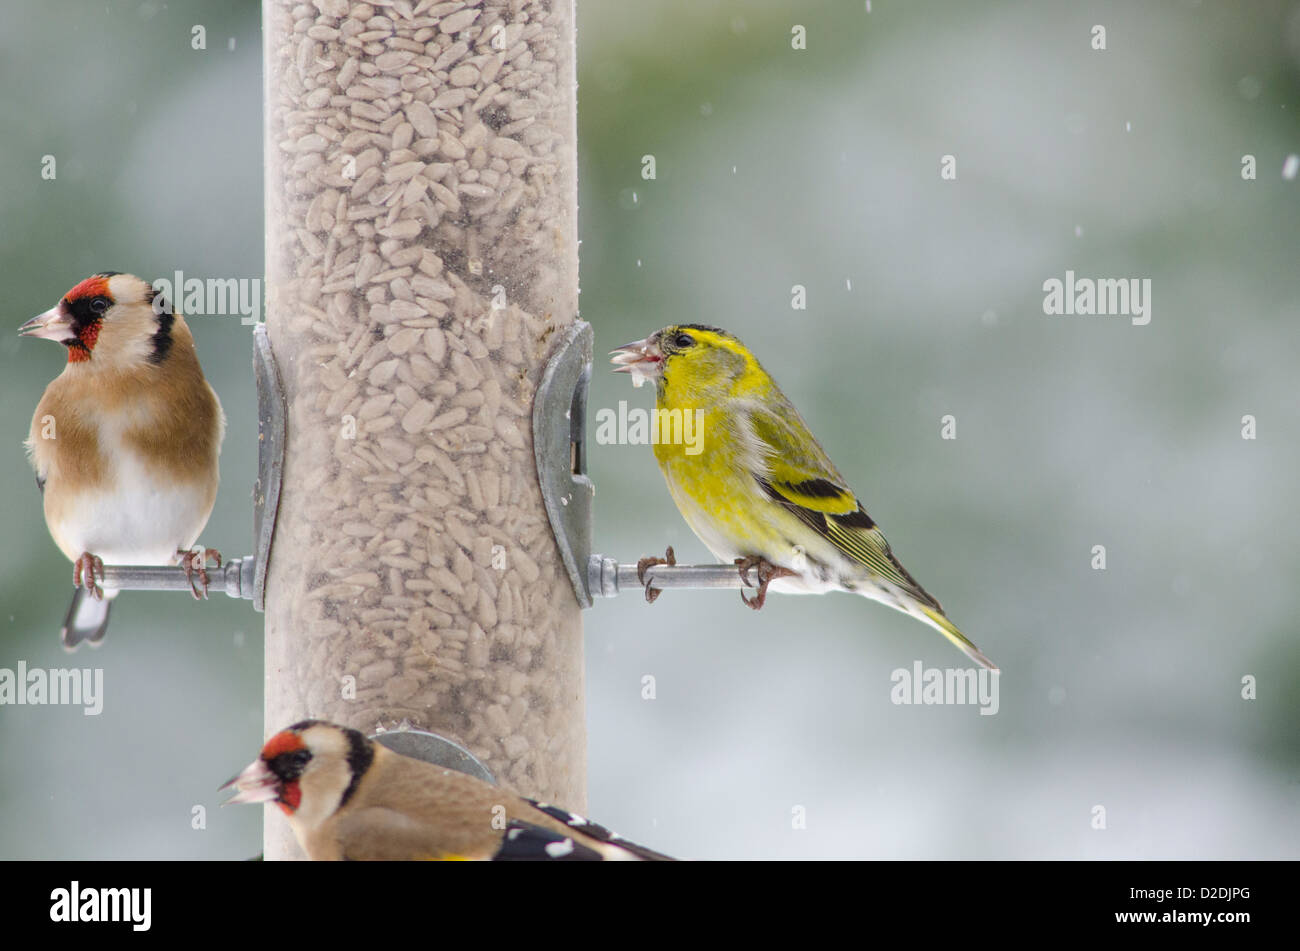 Eurasian or European Siskin [Carduelis spinus] and European Goldfinch [Carduelis carduelis] on bird feeder Stock Photo